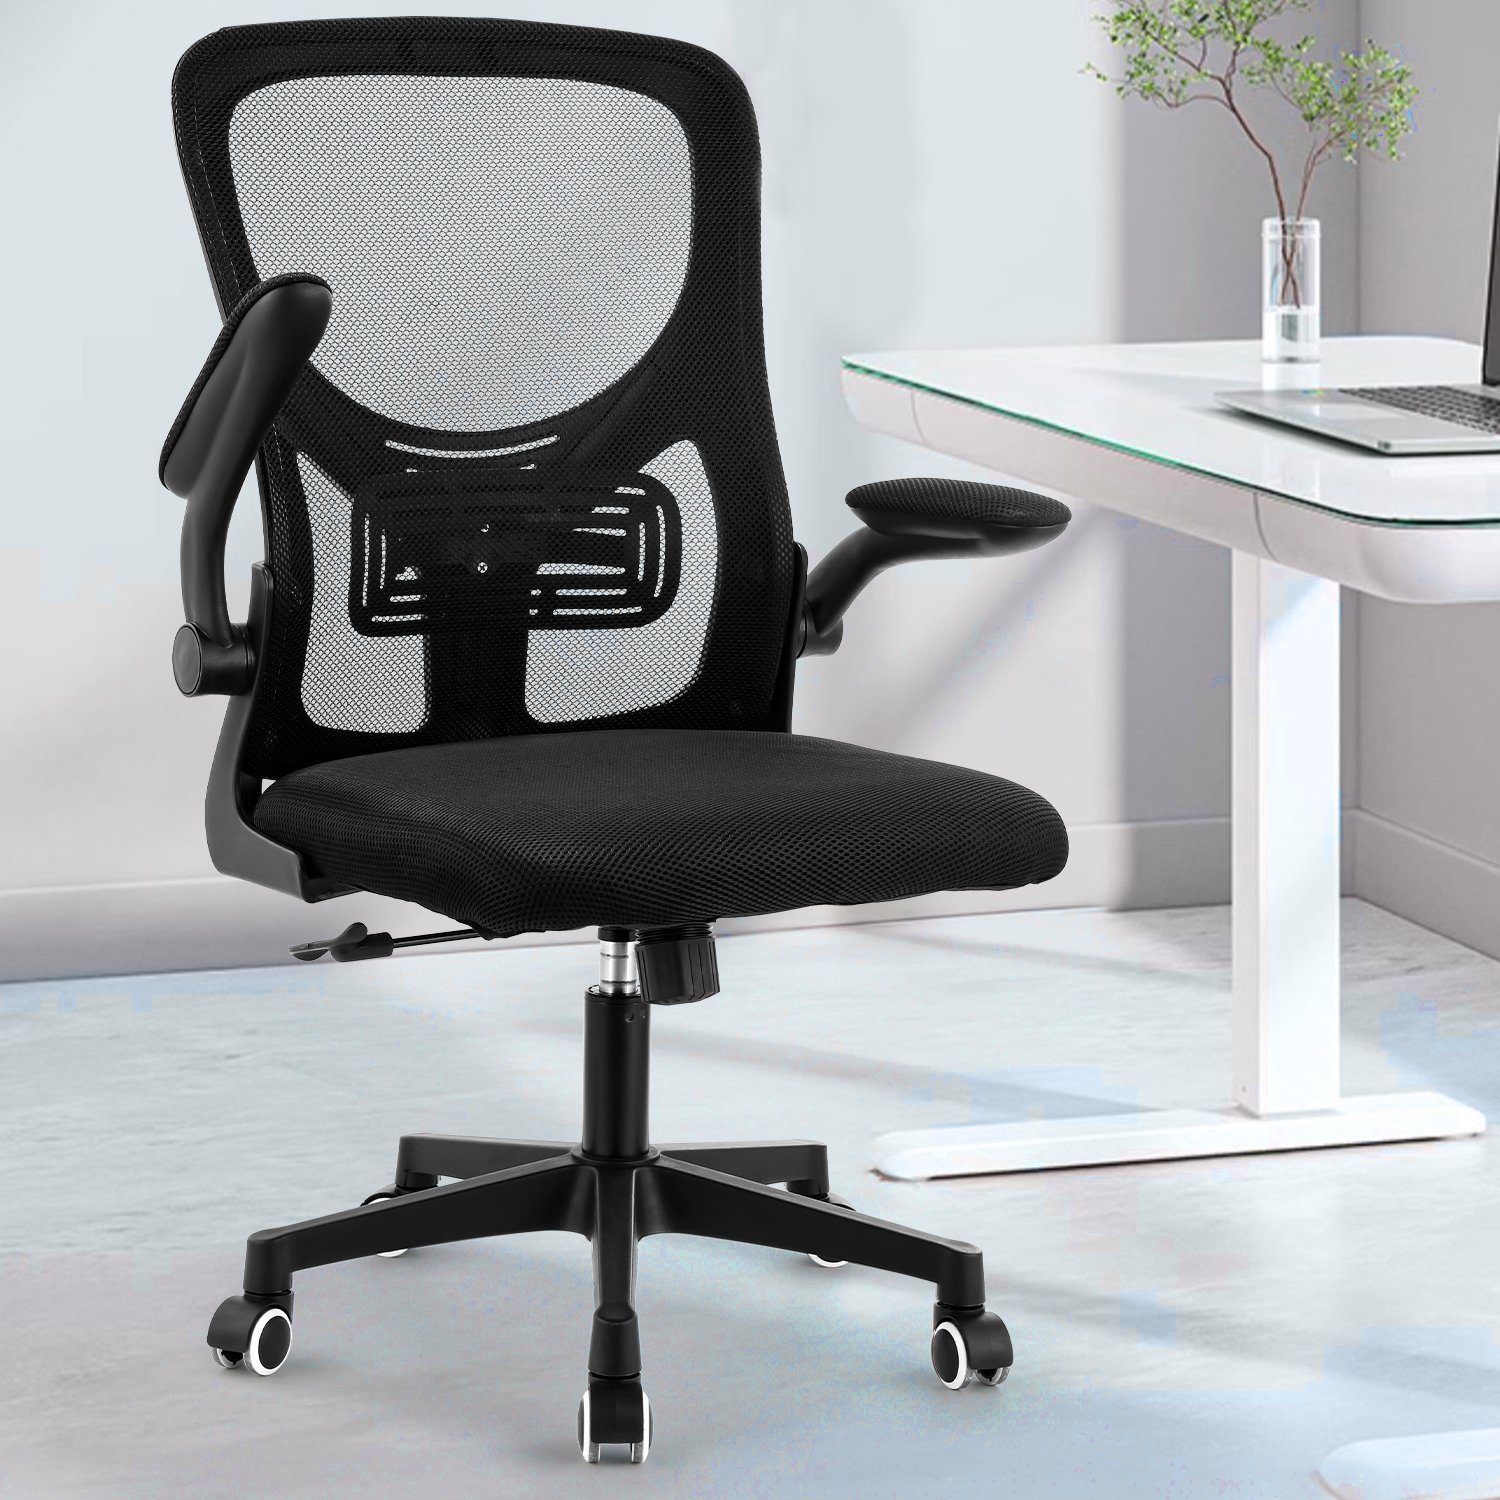 Chair, 90°-135° Schwarz-TB0003 Fußkreuz, Wippfunktion Schreibtischstuhl Ergonomischer Verchromten Sitzfläche, Kunststoffrollen, Höhenverstellbar Gepolsterte LETGOSPT Schreibtischstuhl 5